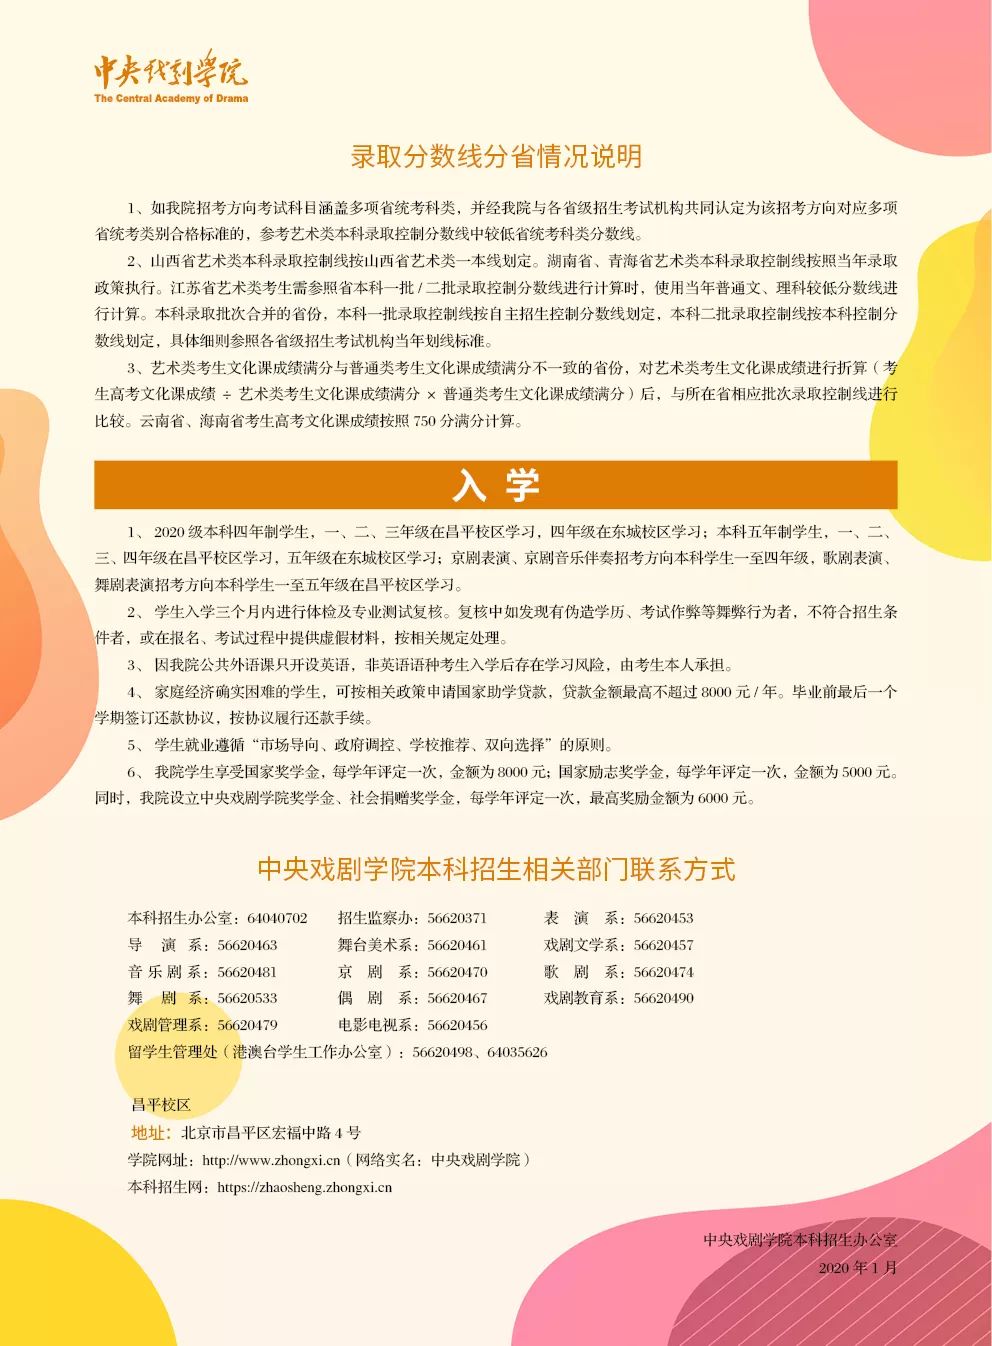 杭州白鹿画室,中央戏剧学院,学院招生简章     10